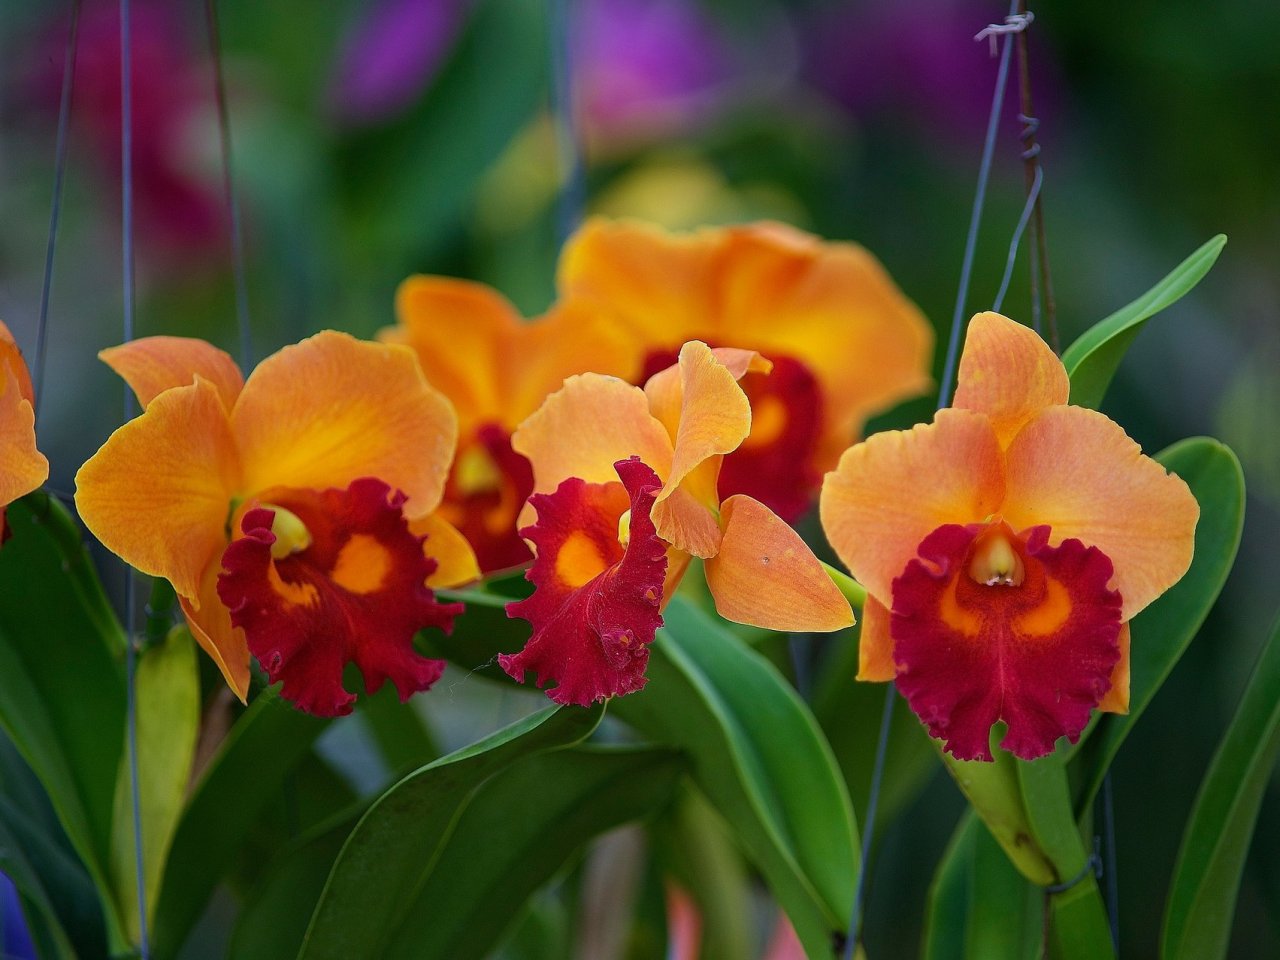 Пазл онлайн: Оранжевые орхидеи